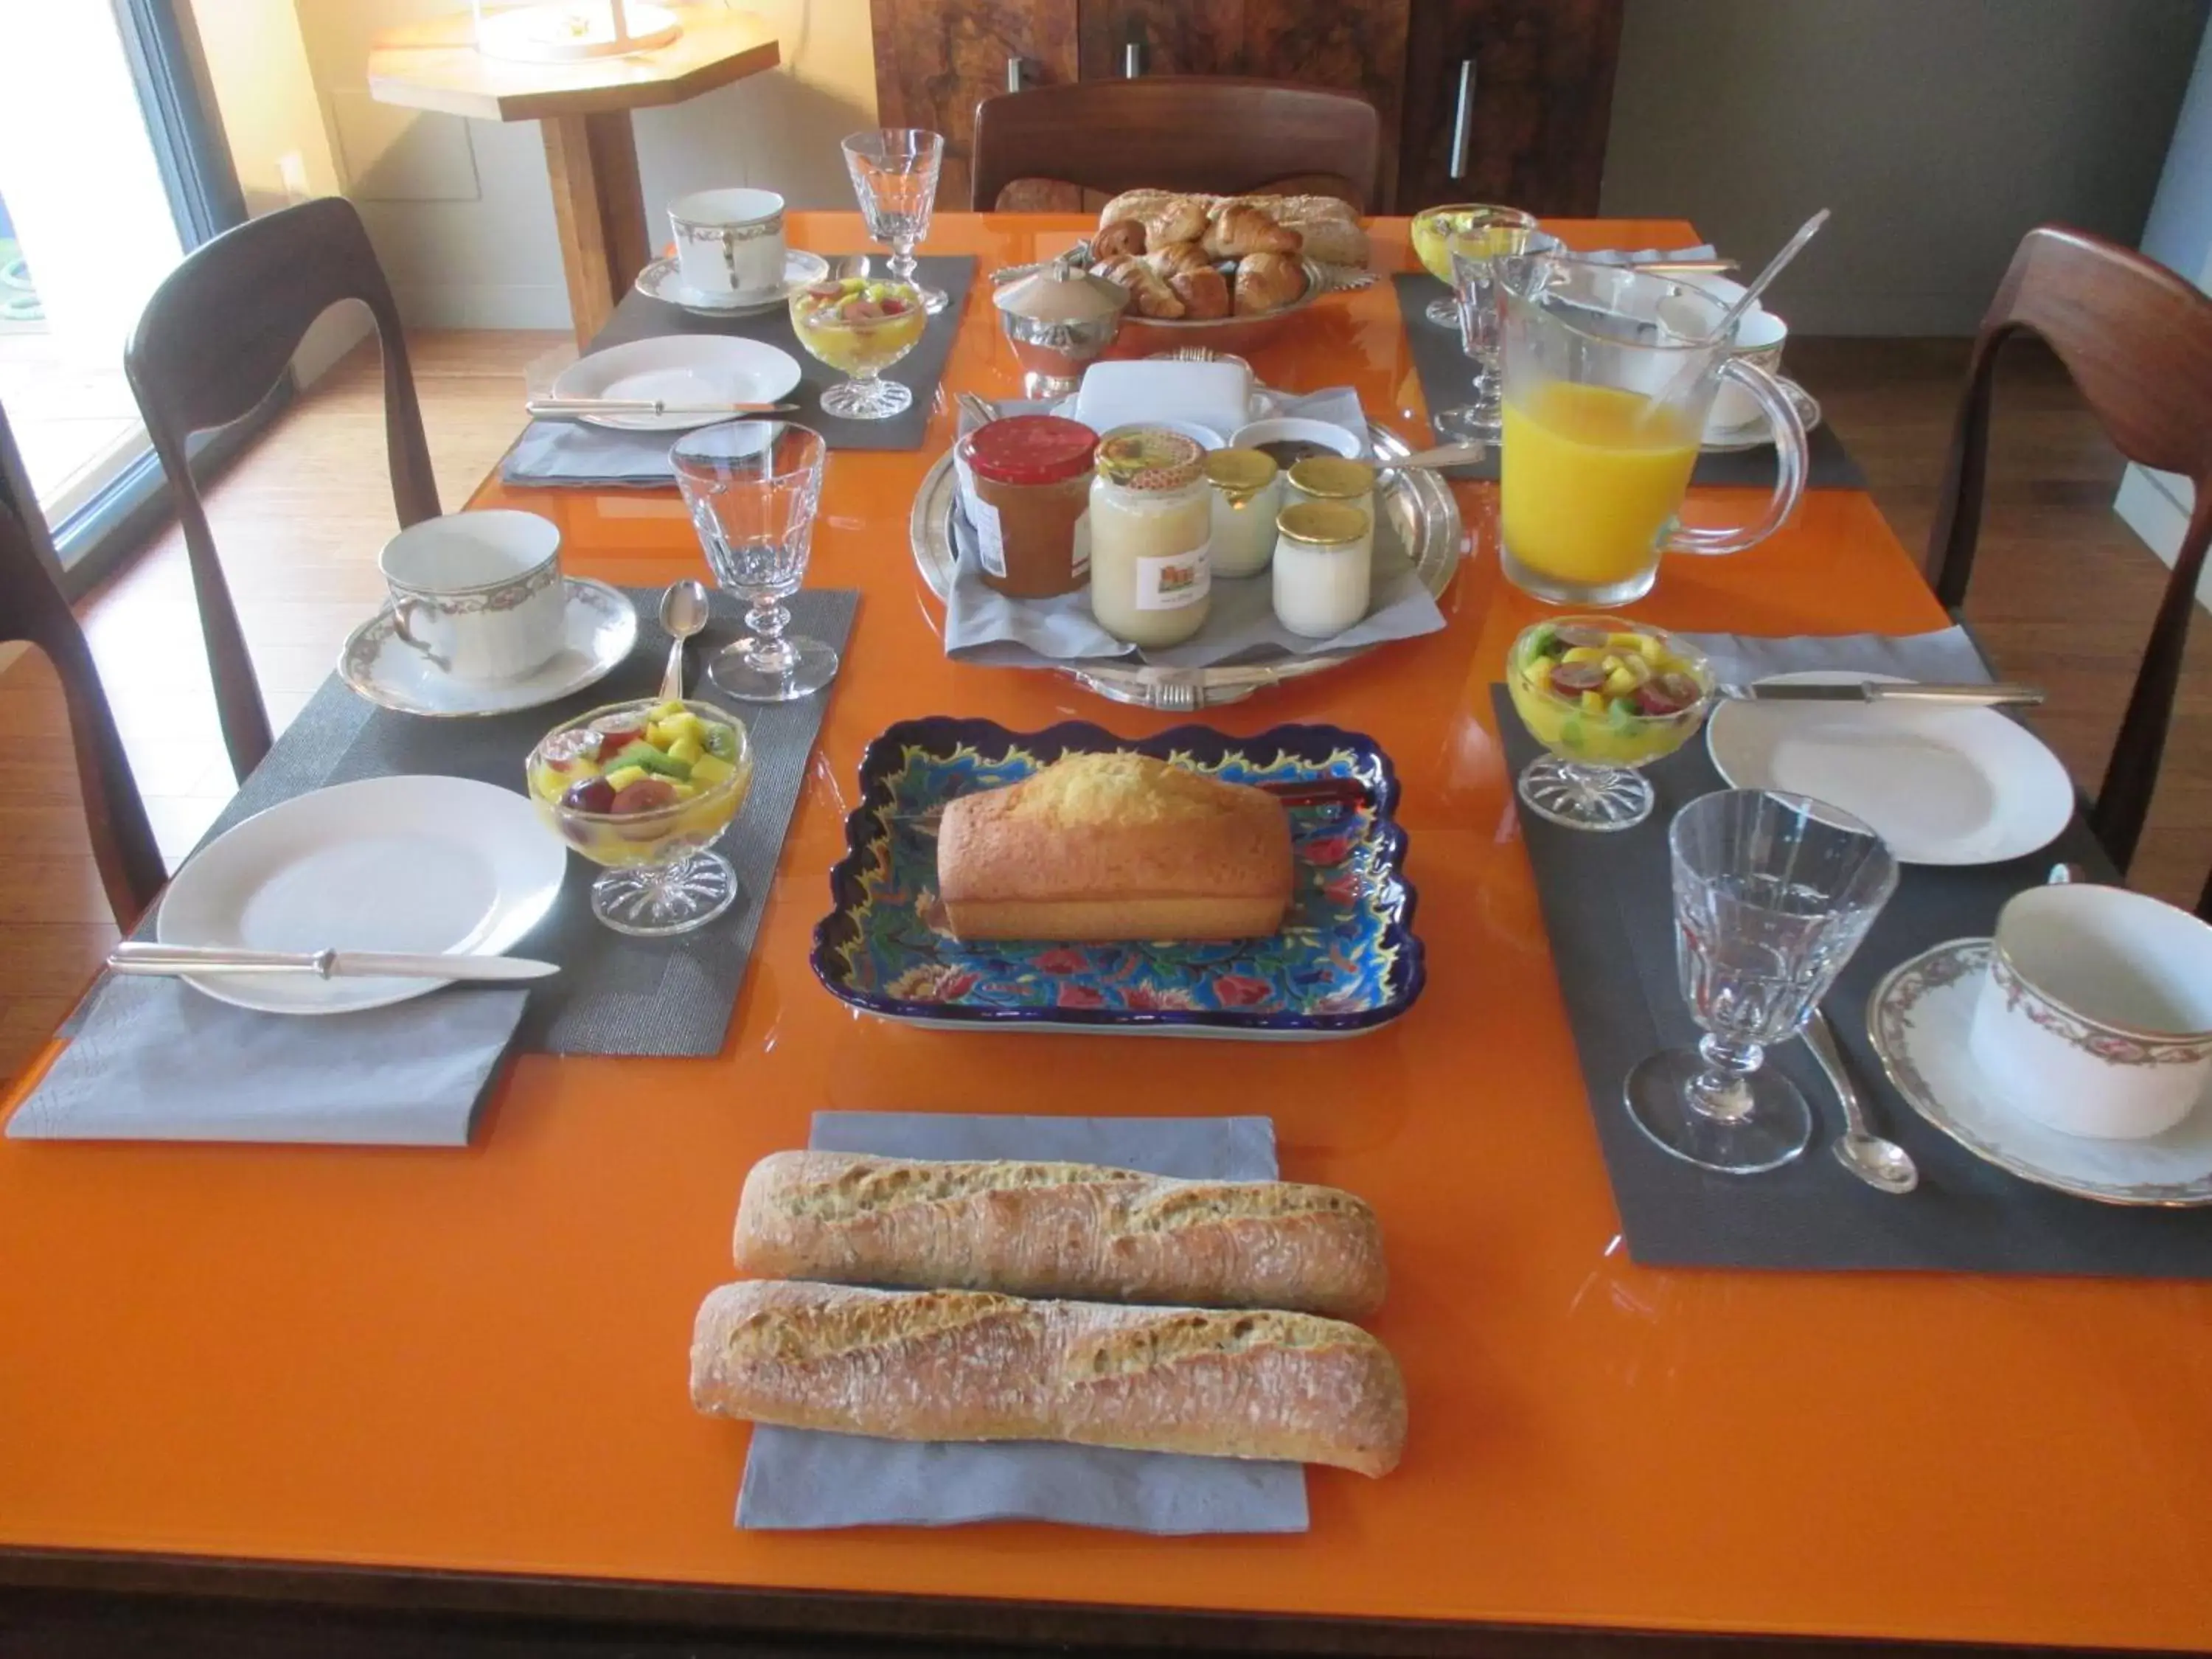 Buffet breakfast, Breakfast in La Galerie